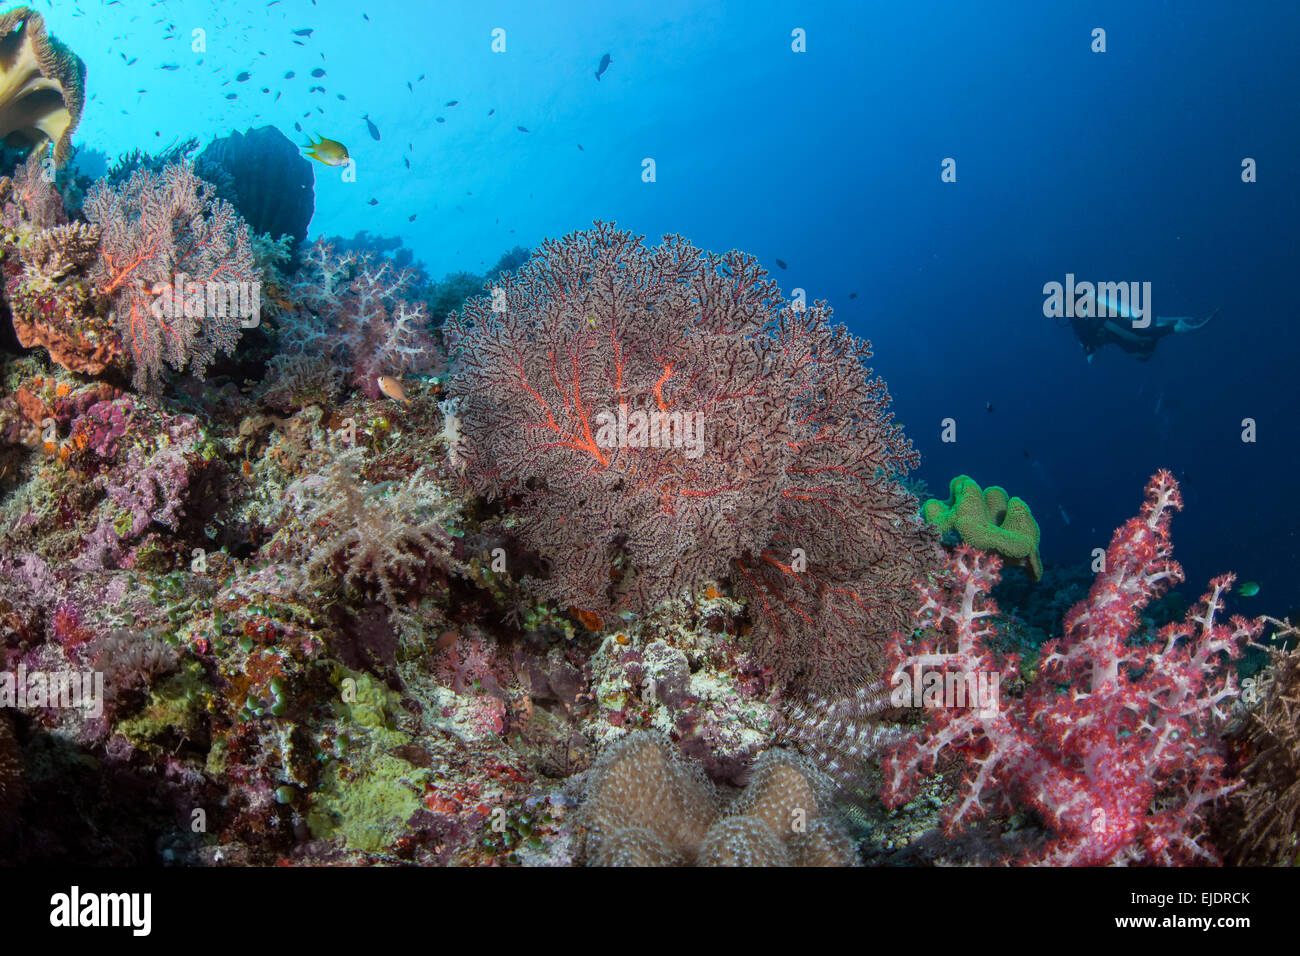 Taucher entdecken ein Korallenriff mit Weichkorallen in verschiedenen Pastellfarben. Spratly-Inseln, South China Sea. Juli 2014 Stockfoto